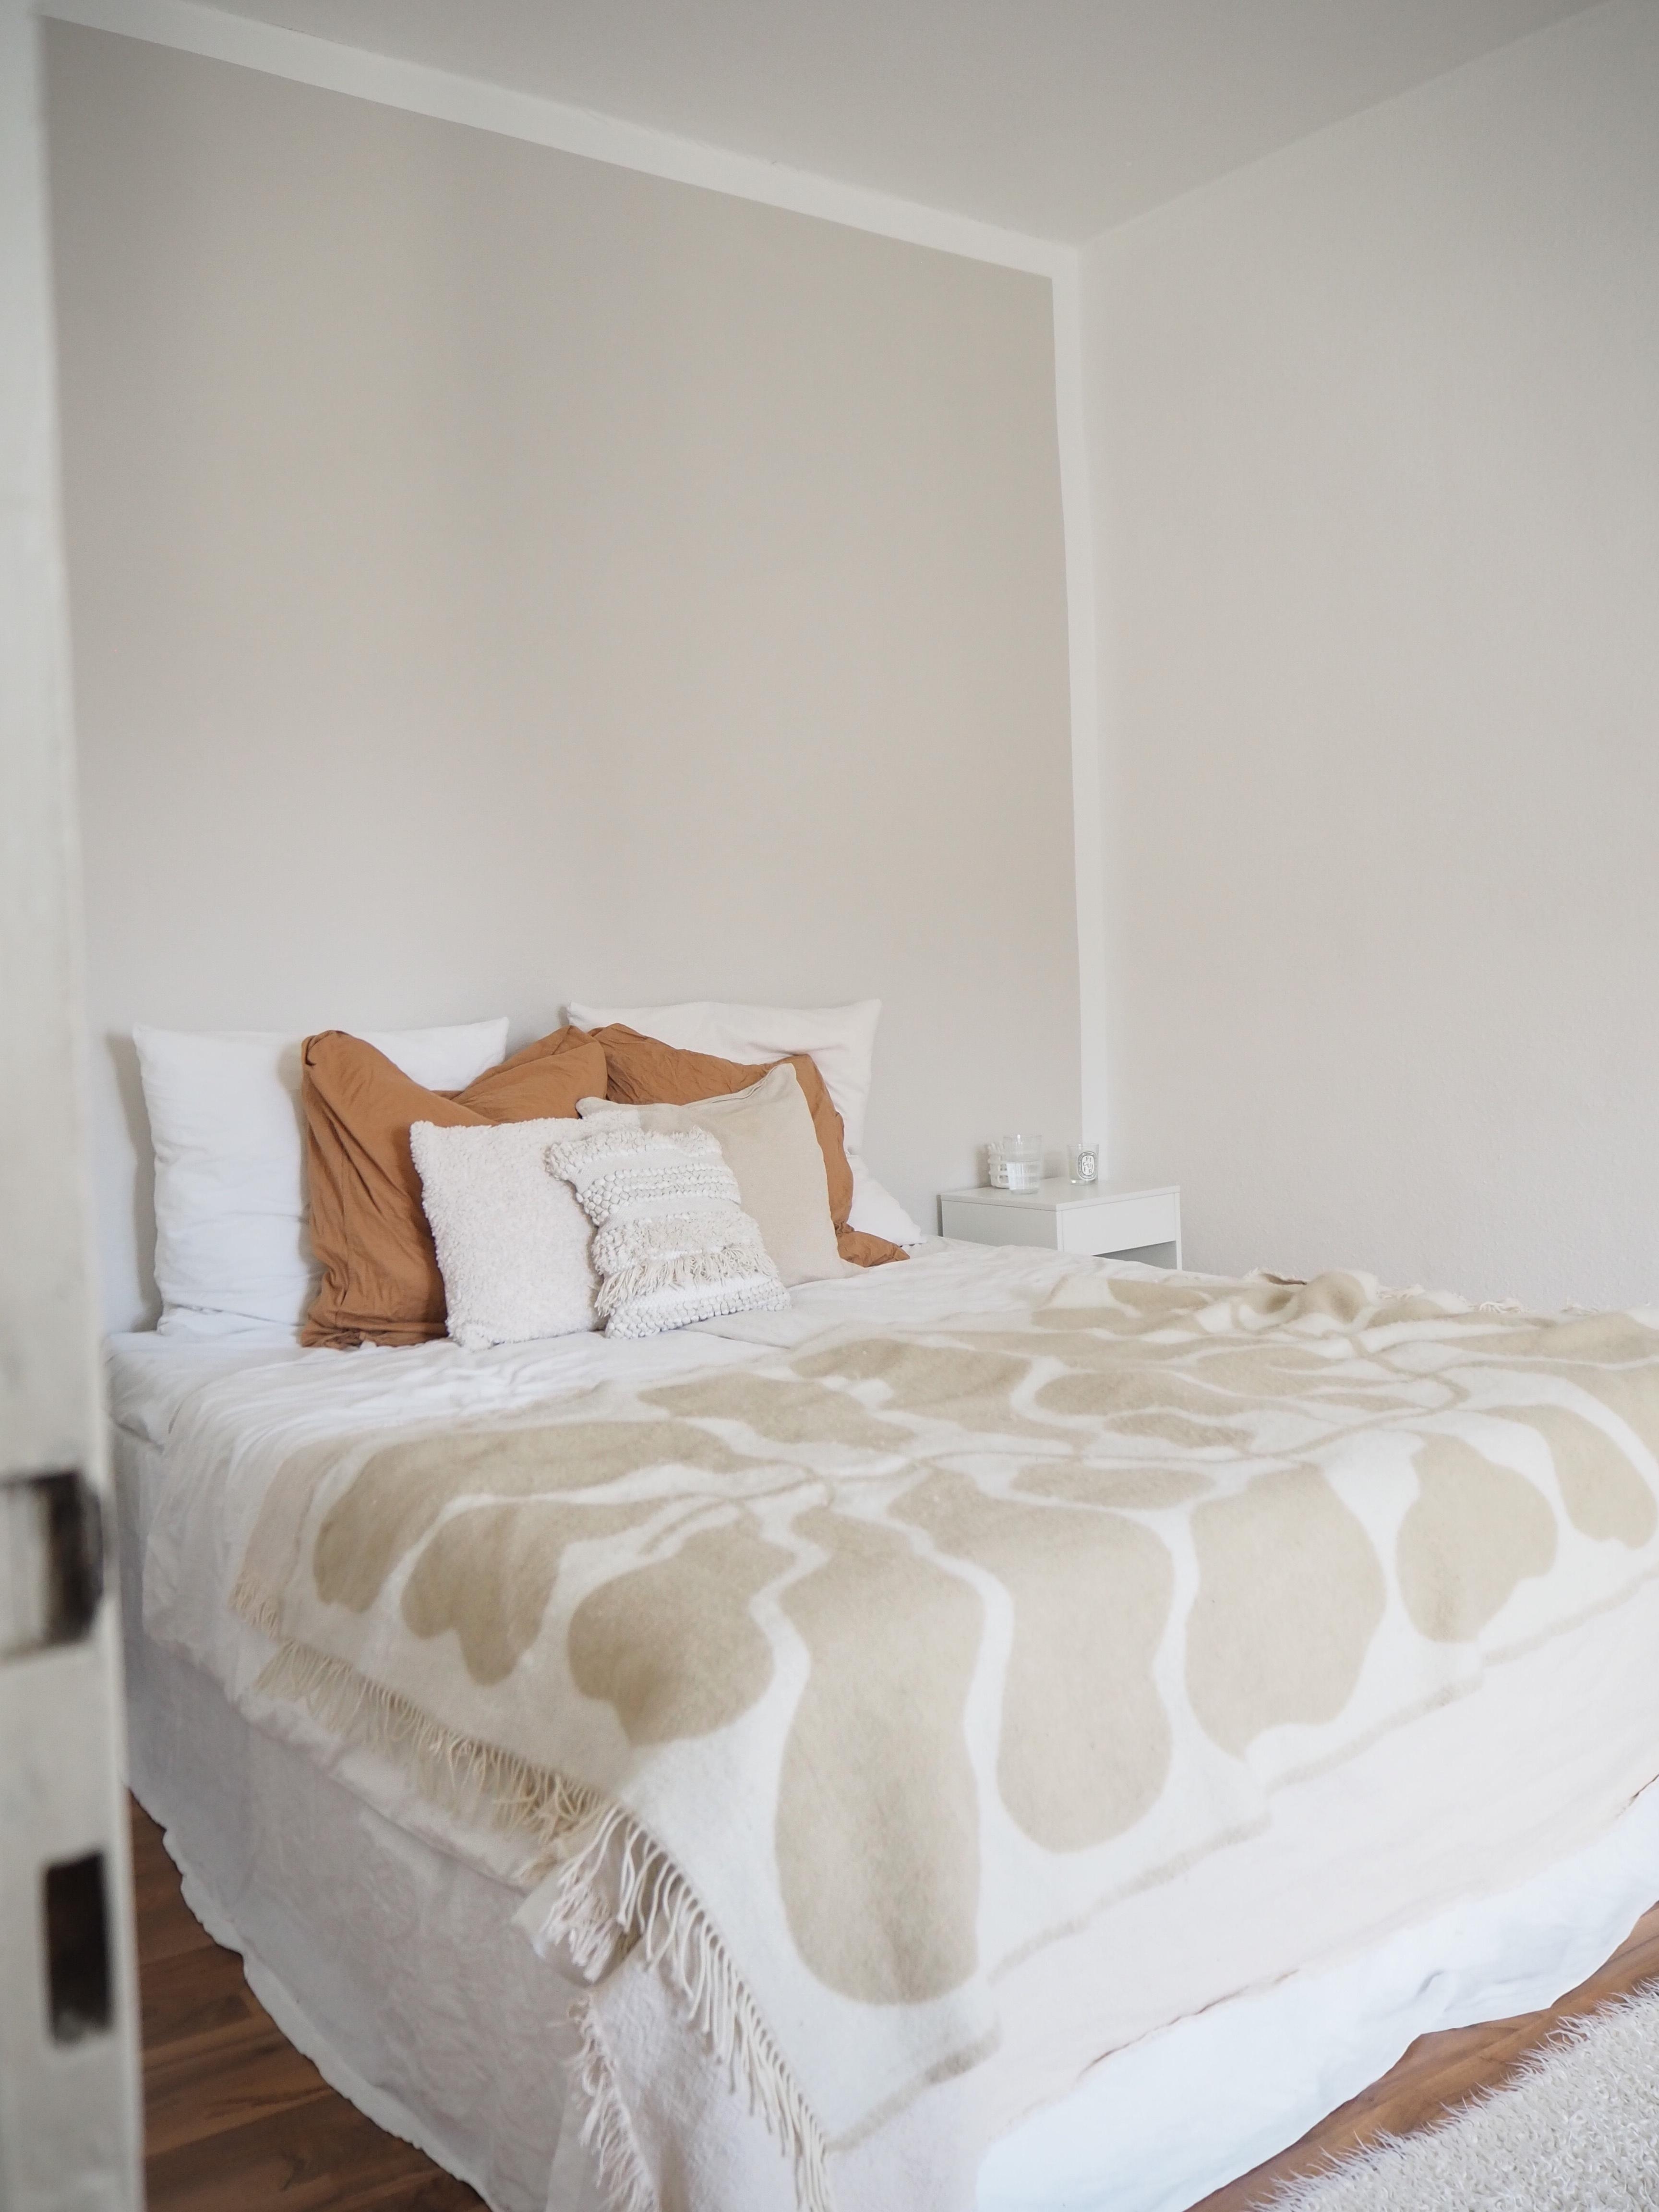 Schlummerstube ✨ #schlafzimmer #bedroom #naturals #bett #klippan #decke #hyggelig #nordic #scandi #schlafen 